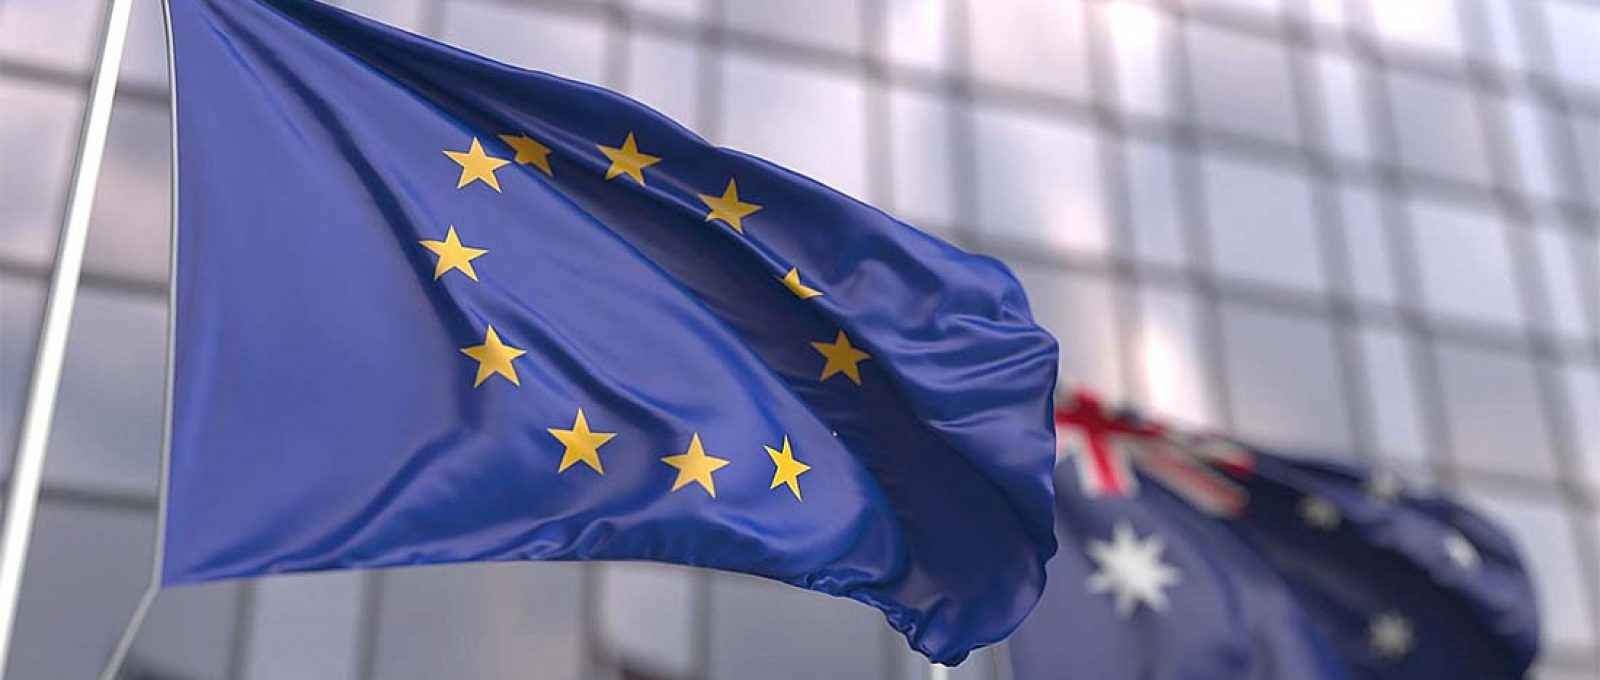 Bandeiras da União Europeia e da Austrália (Foto: AIIA).